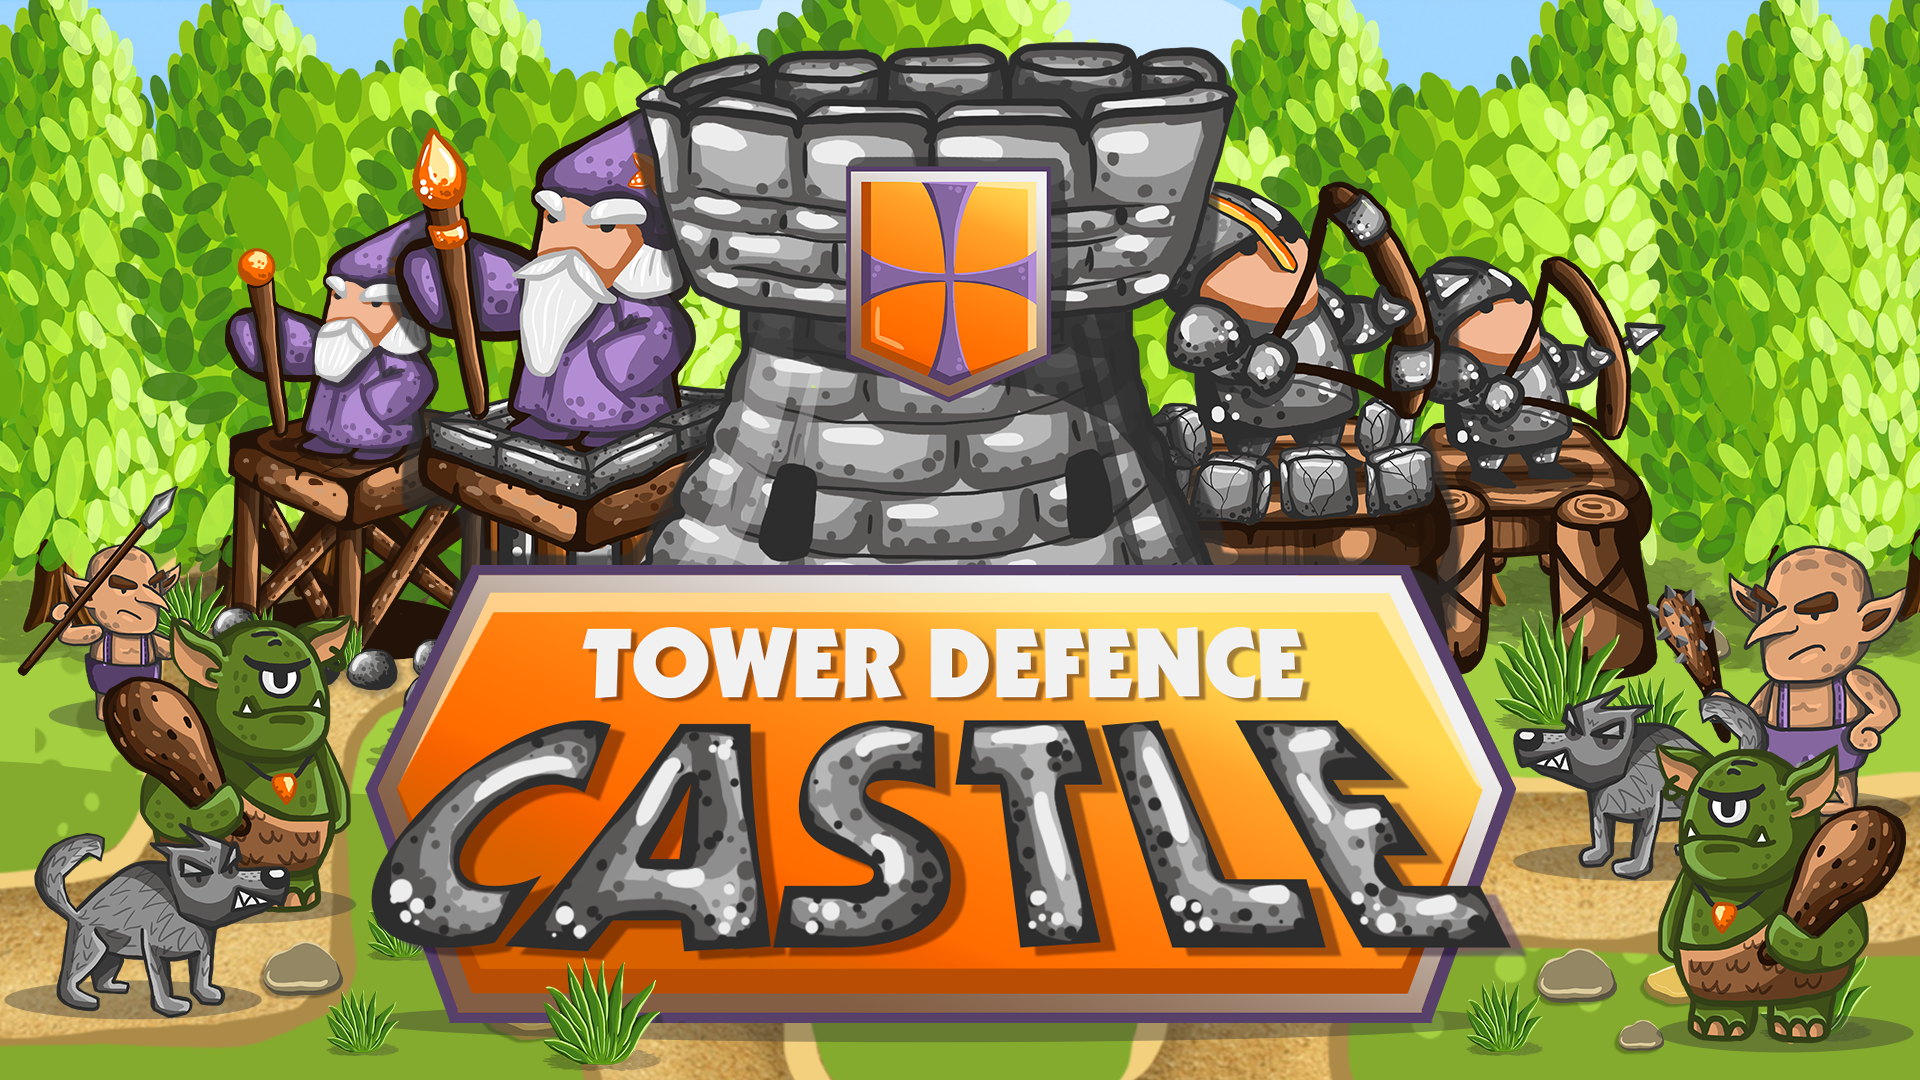 Screenshot 1 of Defensa de la torre - Castillo TD 1.02